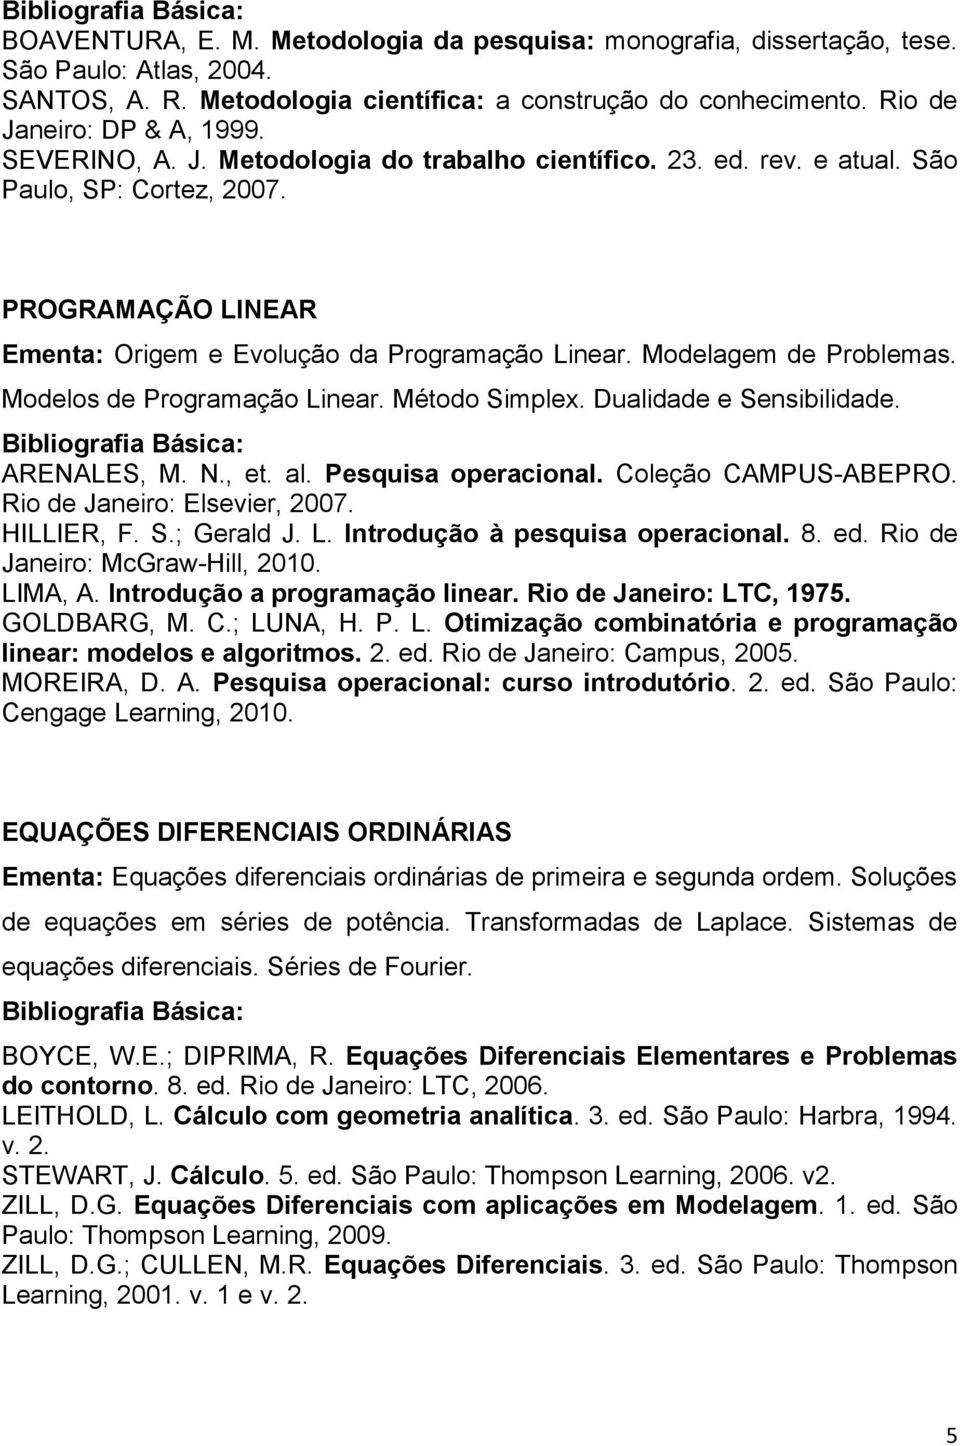 Modelos de Programação Linear. Método Simplex. Dualidade e Sensibilidade. ARENALES, M. N., et. al. Pesquisa operacional. Coleção CAMPUS-ABEPRO. Rio de Janeiro: Elsevier, 2007. HILLIER, F. S.; Gerald J.